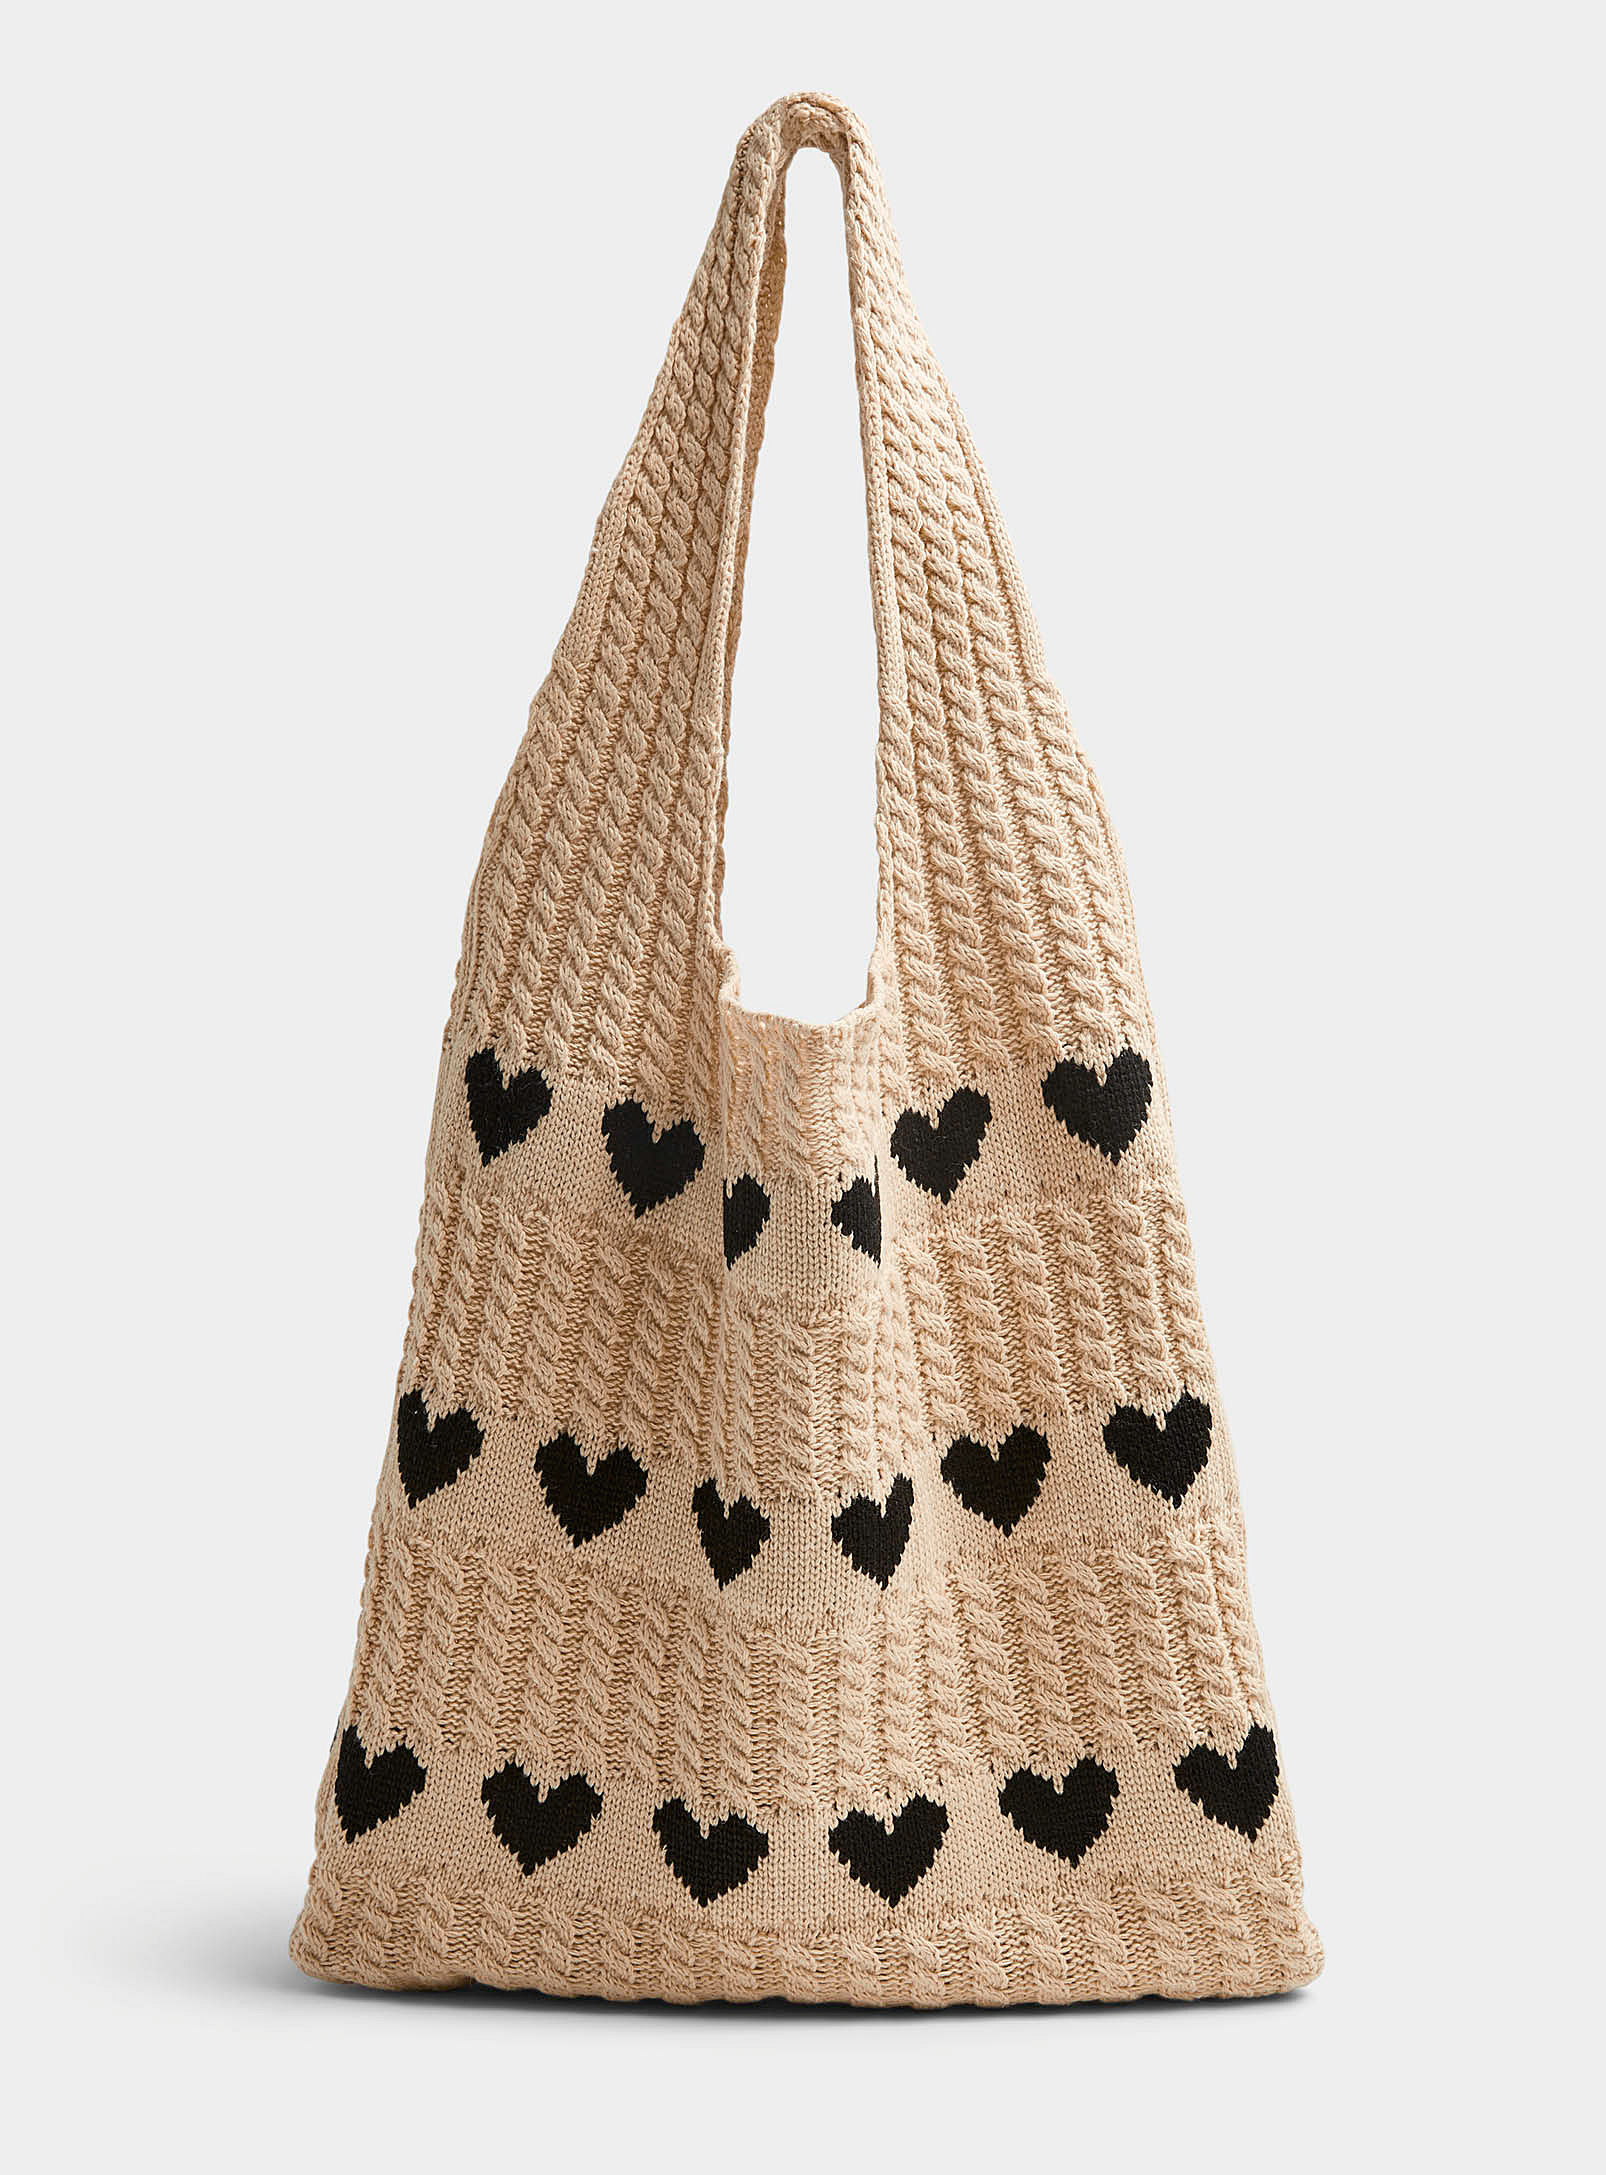 Simons - Women's Heart crochet Tote Bag